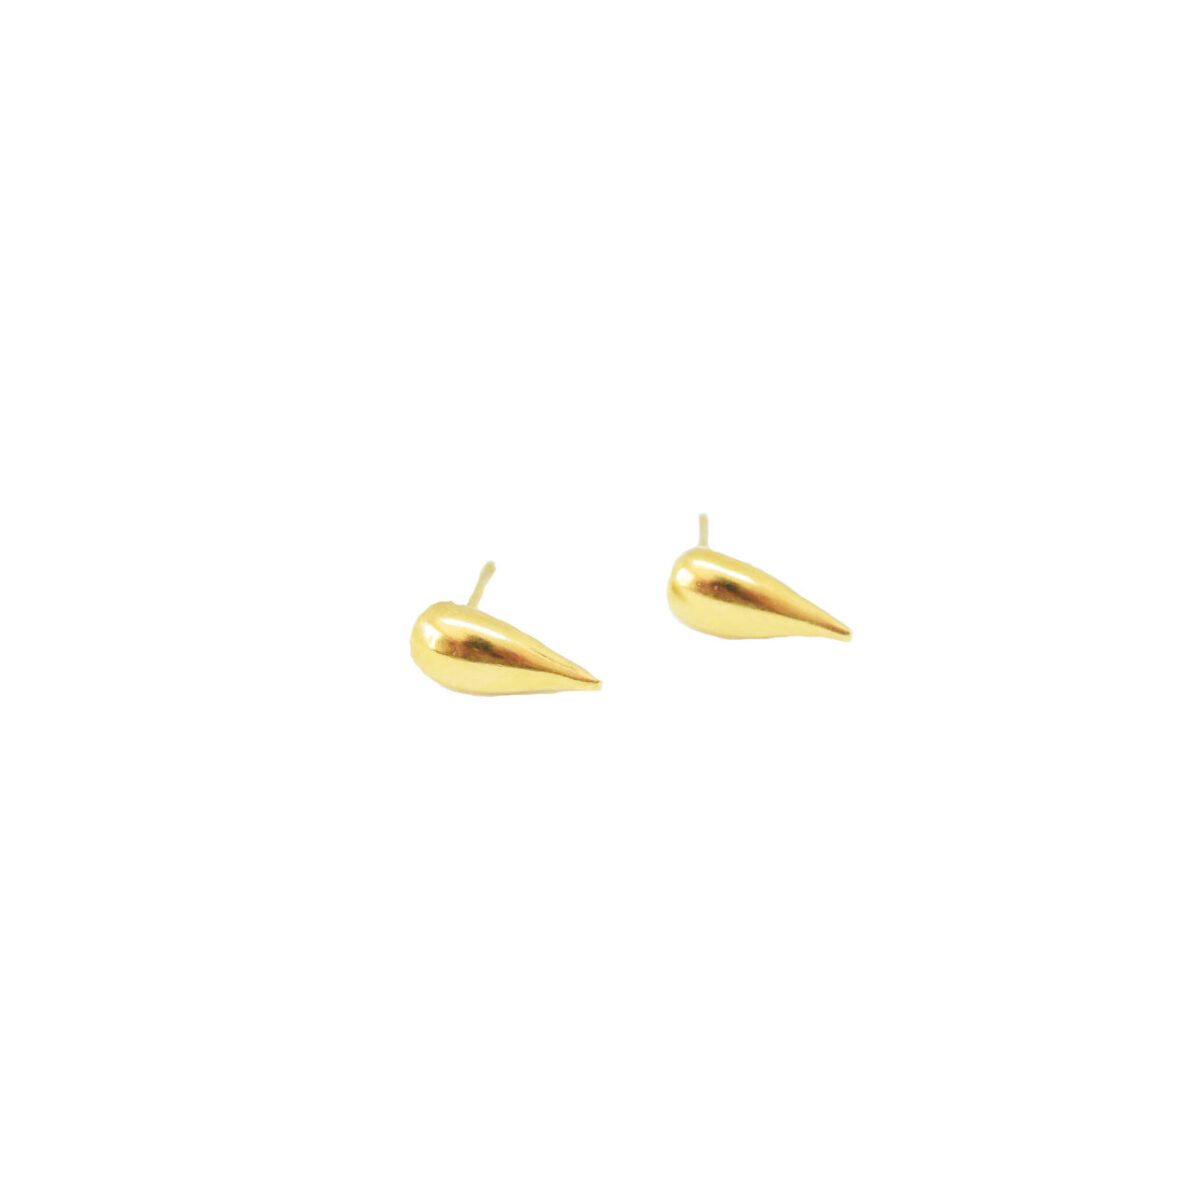 Water Drop earrings II gold plated